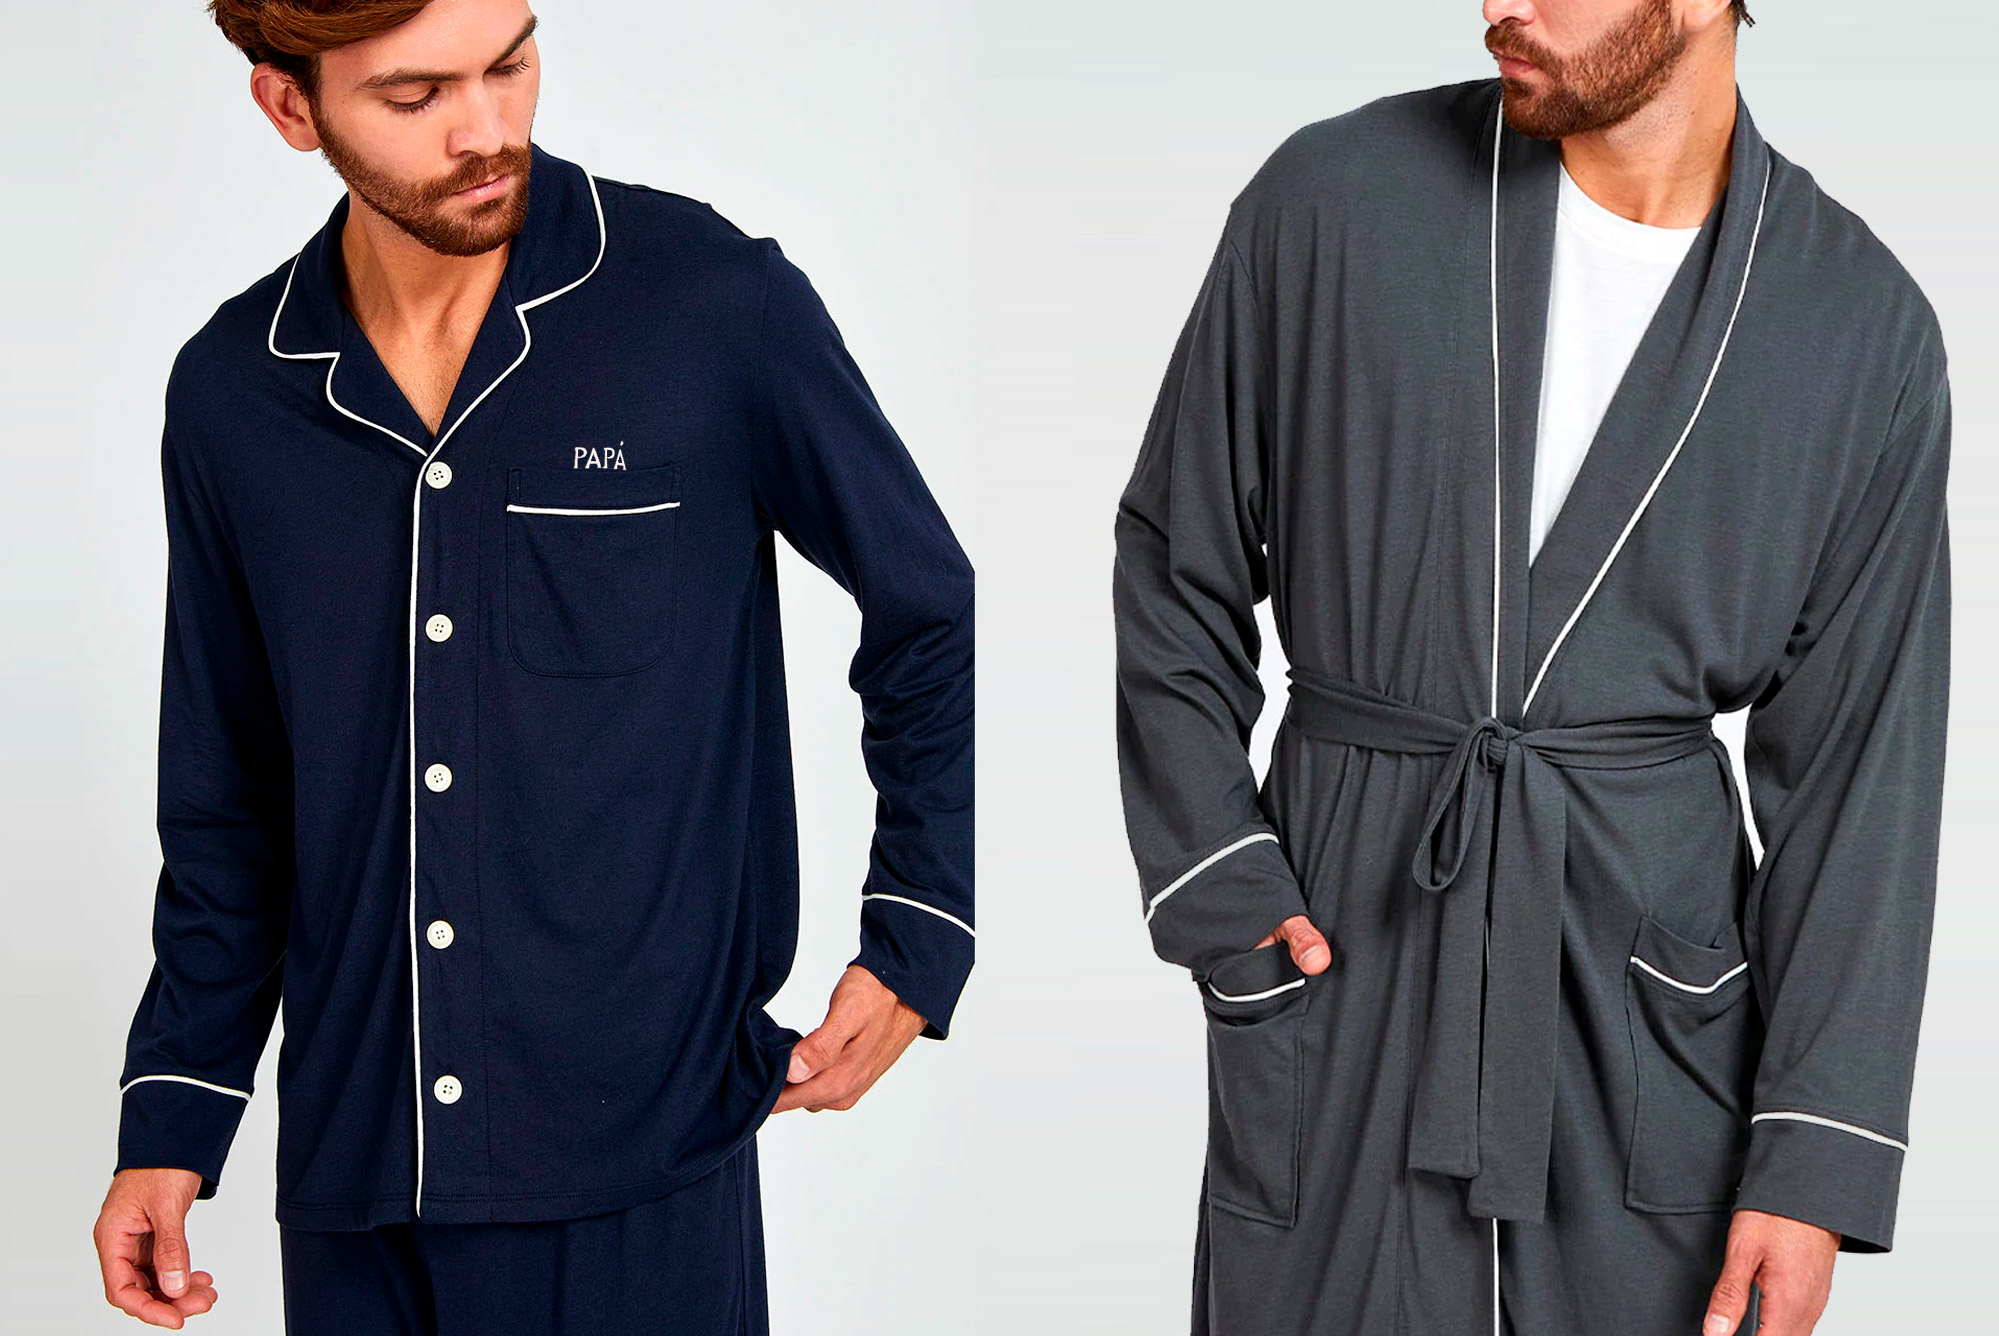 El mejor regalo para papá: inBLOOM renueva su línea masculina con pijamas personalizados